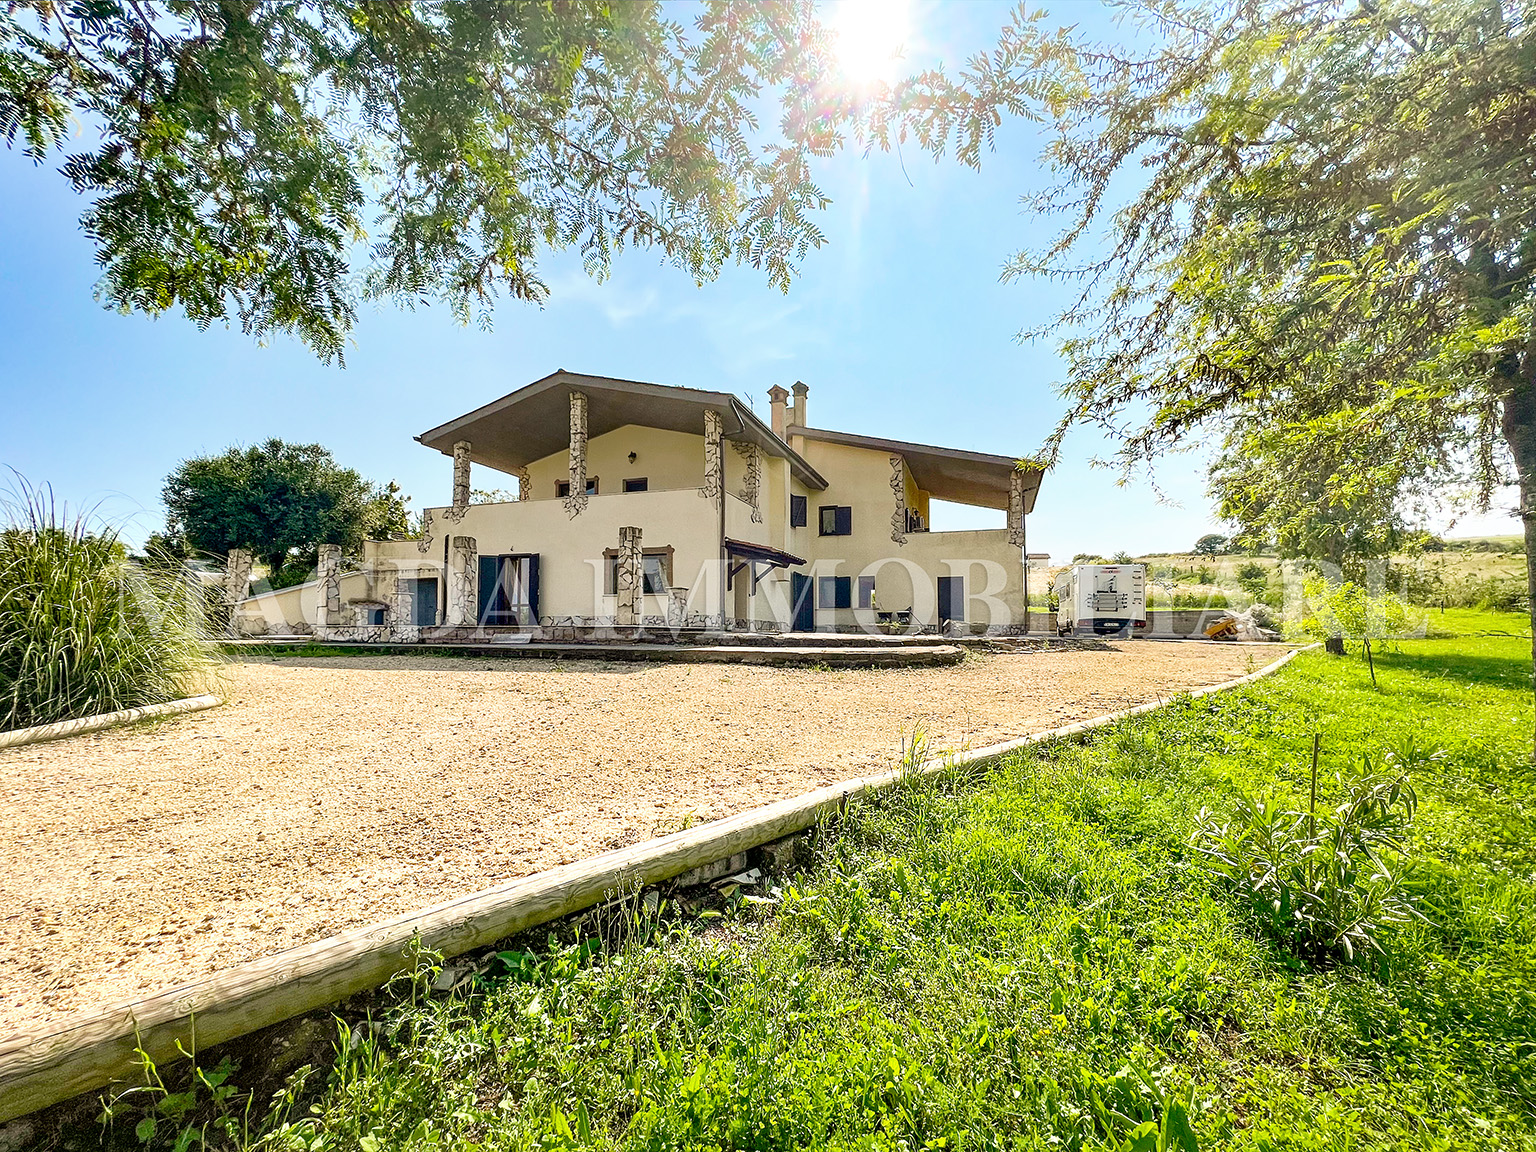 Villa Unifamiliare al Sasso - Via Orti della Paola.